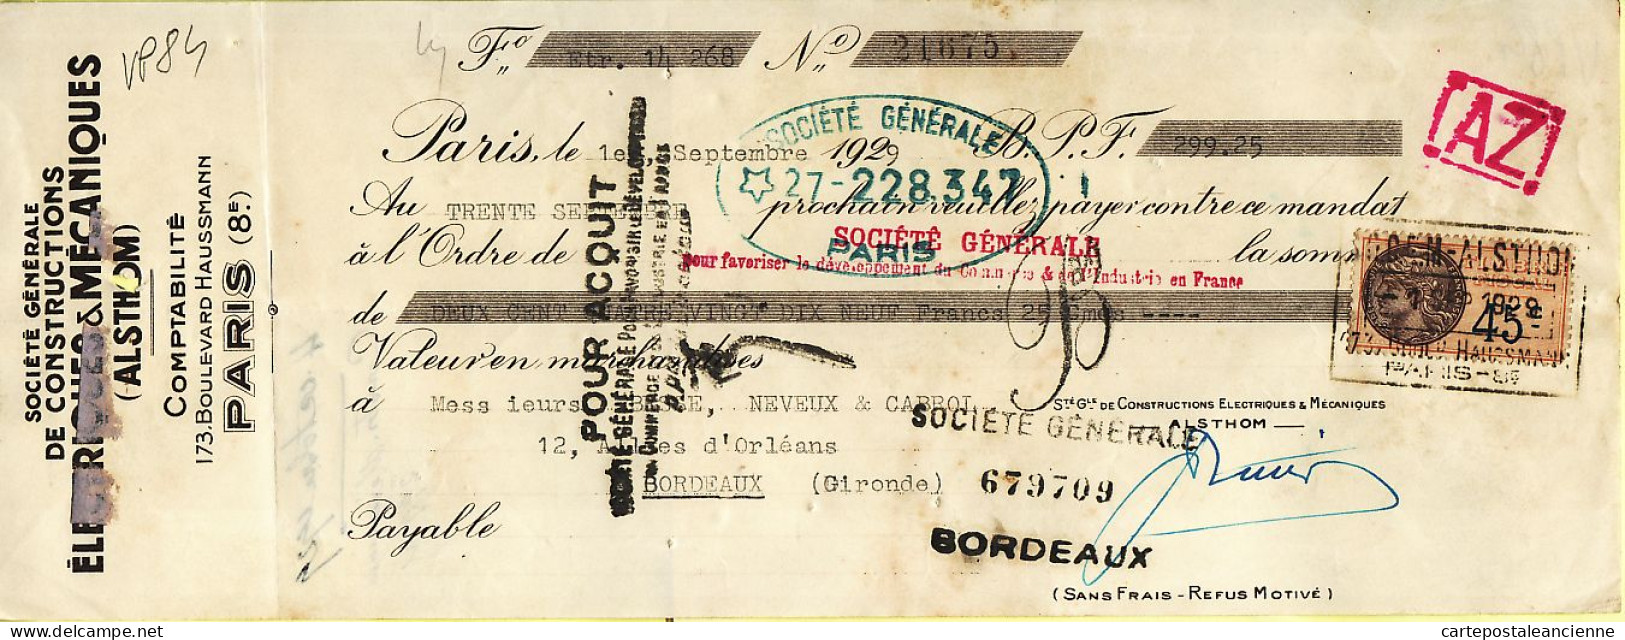 31300 / PARIS ALSTHOM Constructions Electriques Boulevard Haussmann Mandat-Chèque 1929 à BESSE NEVEUX CABROL - Cheques & Traverler's Cheques